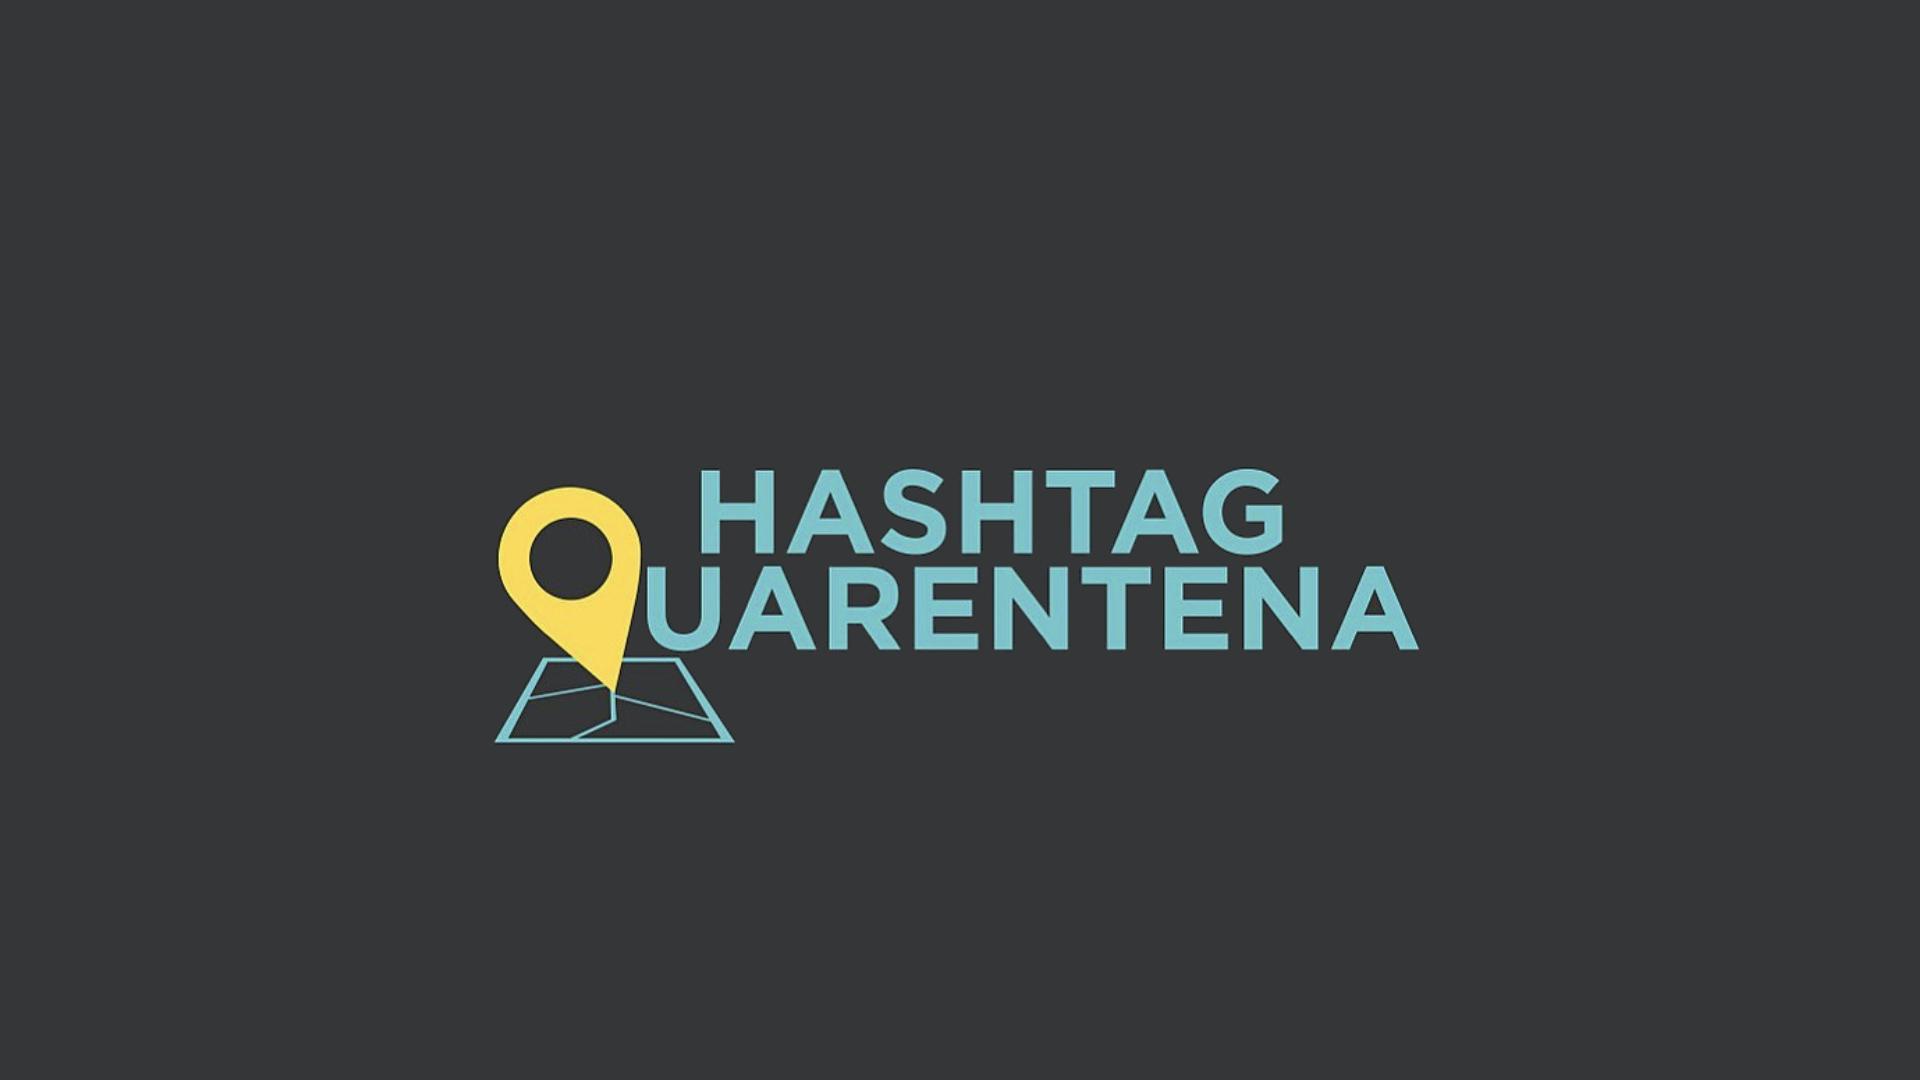 HashtagQuarentena